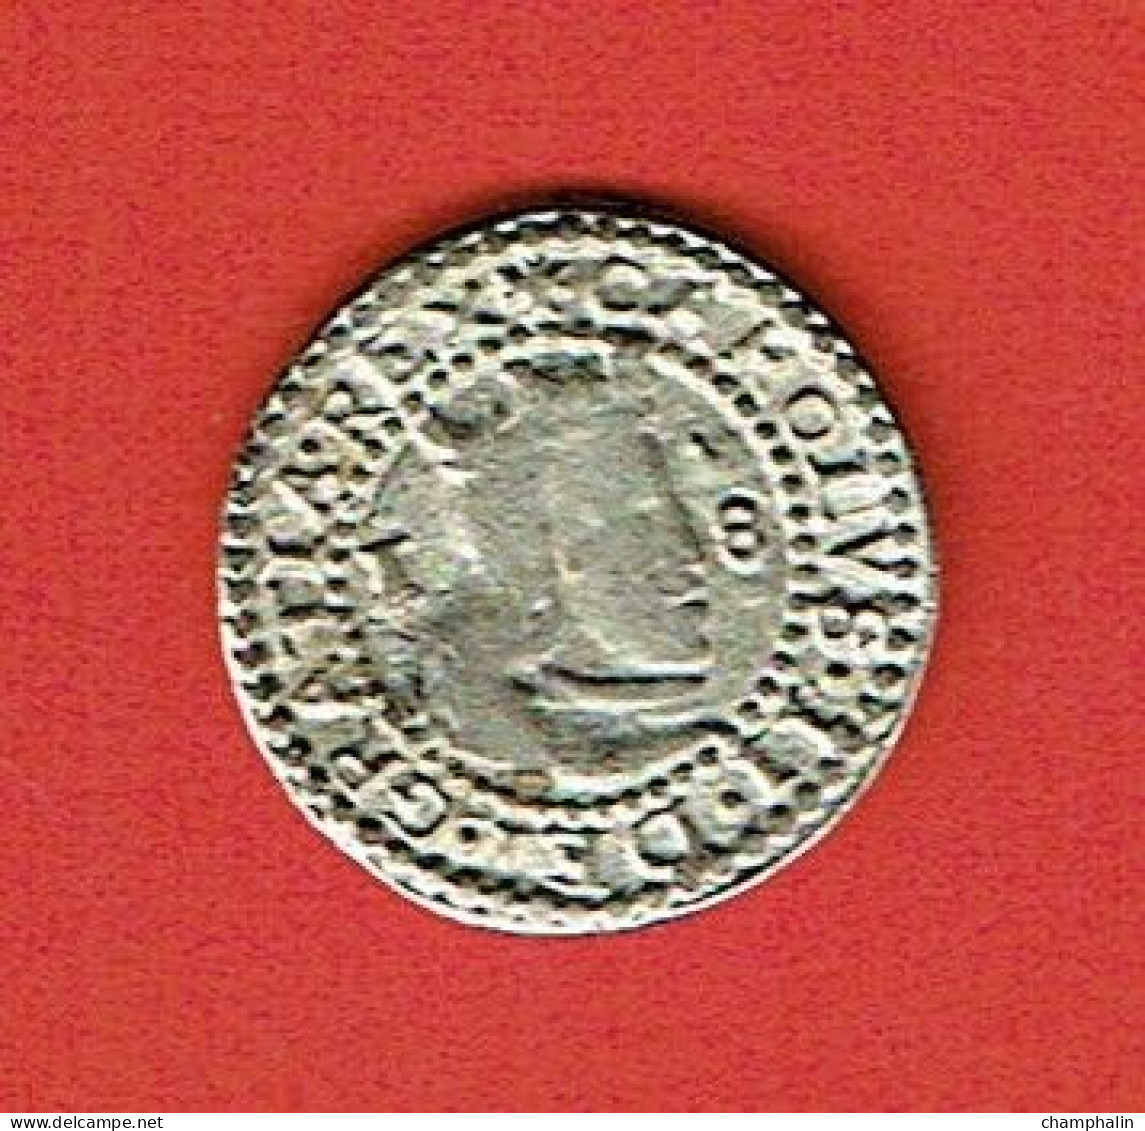 Espagne - Reproduction Monnaie - 1 Real Plata - Valencia 1683 - Charles II L'Ensorcelé (1665-1700) - Monnaies Provinciales